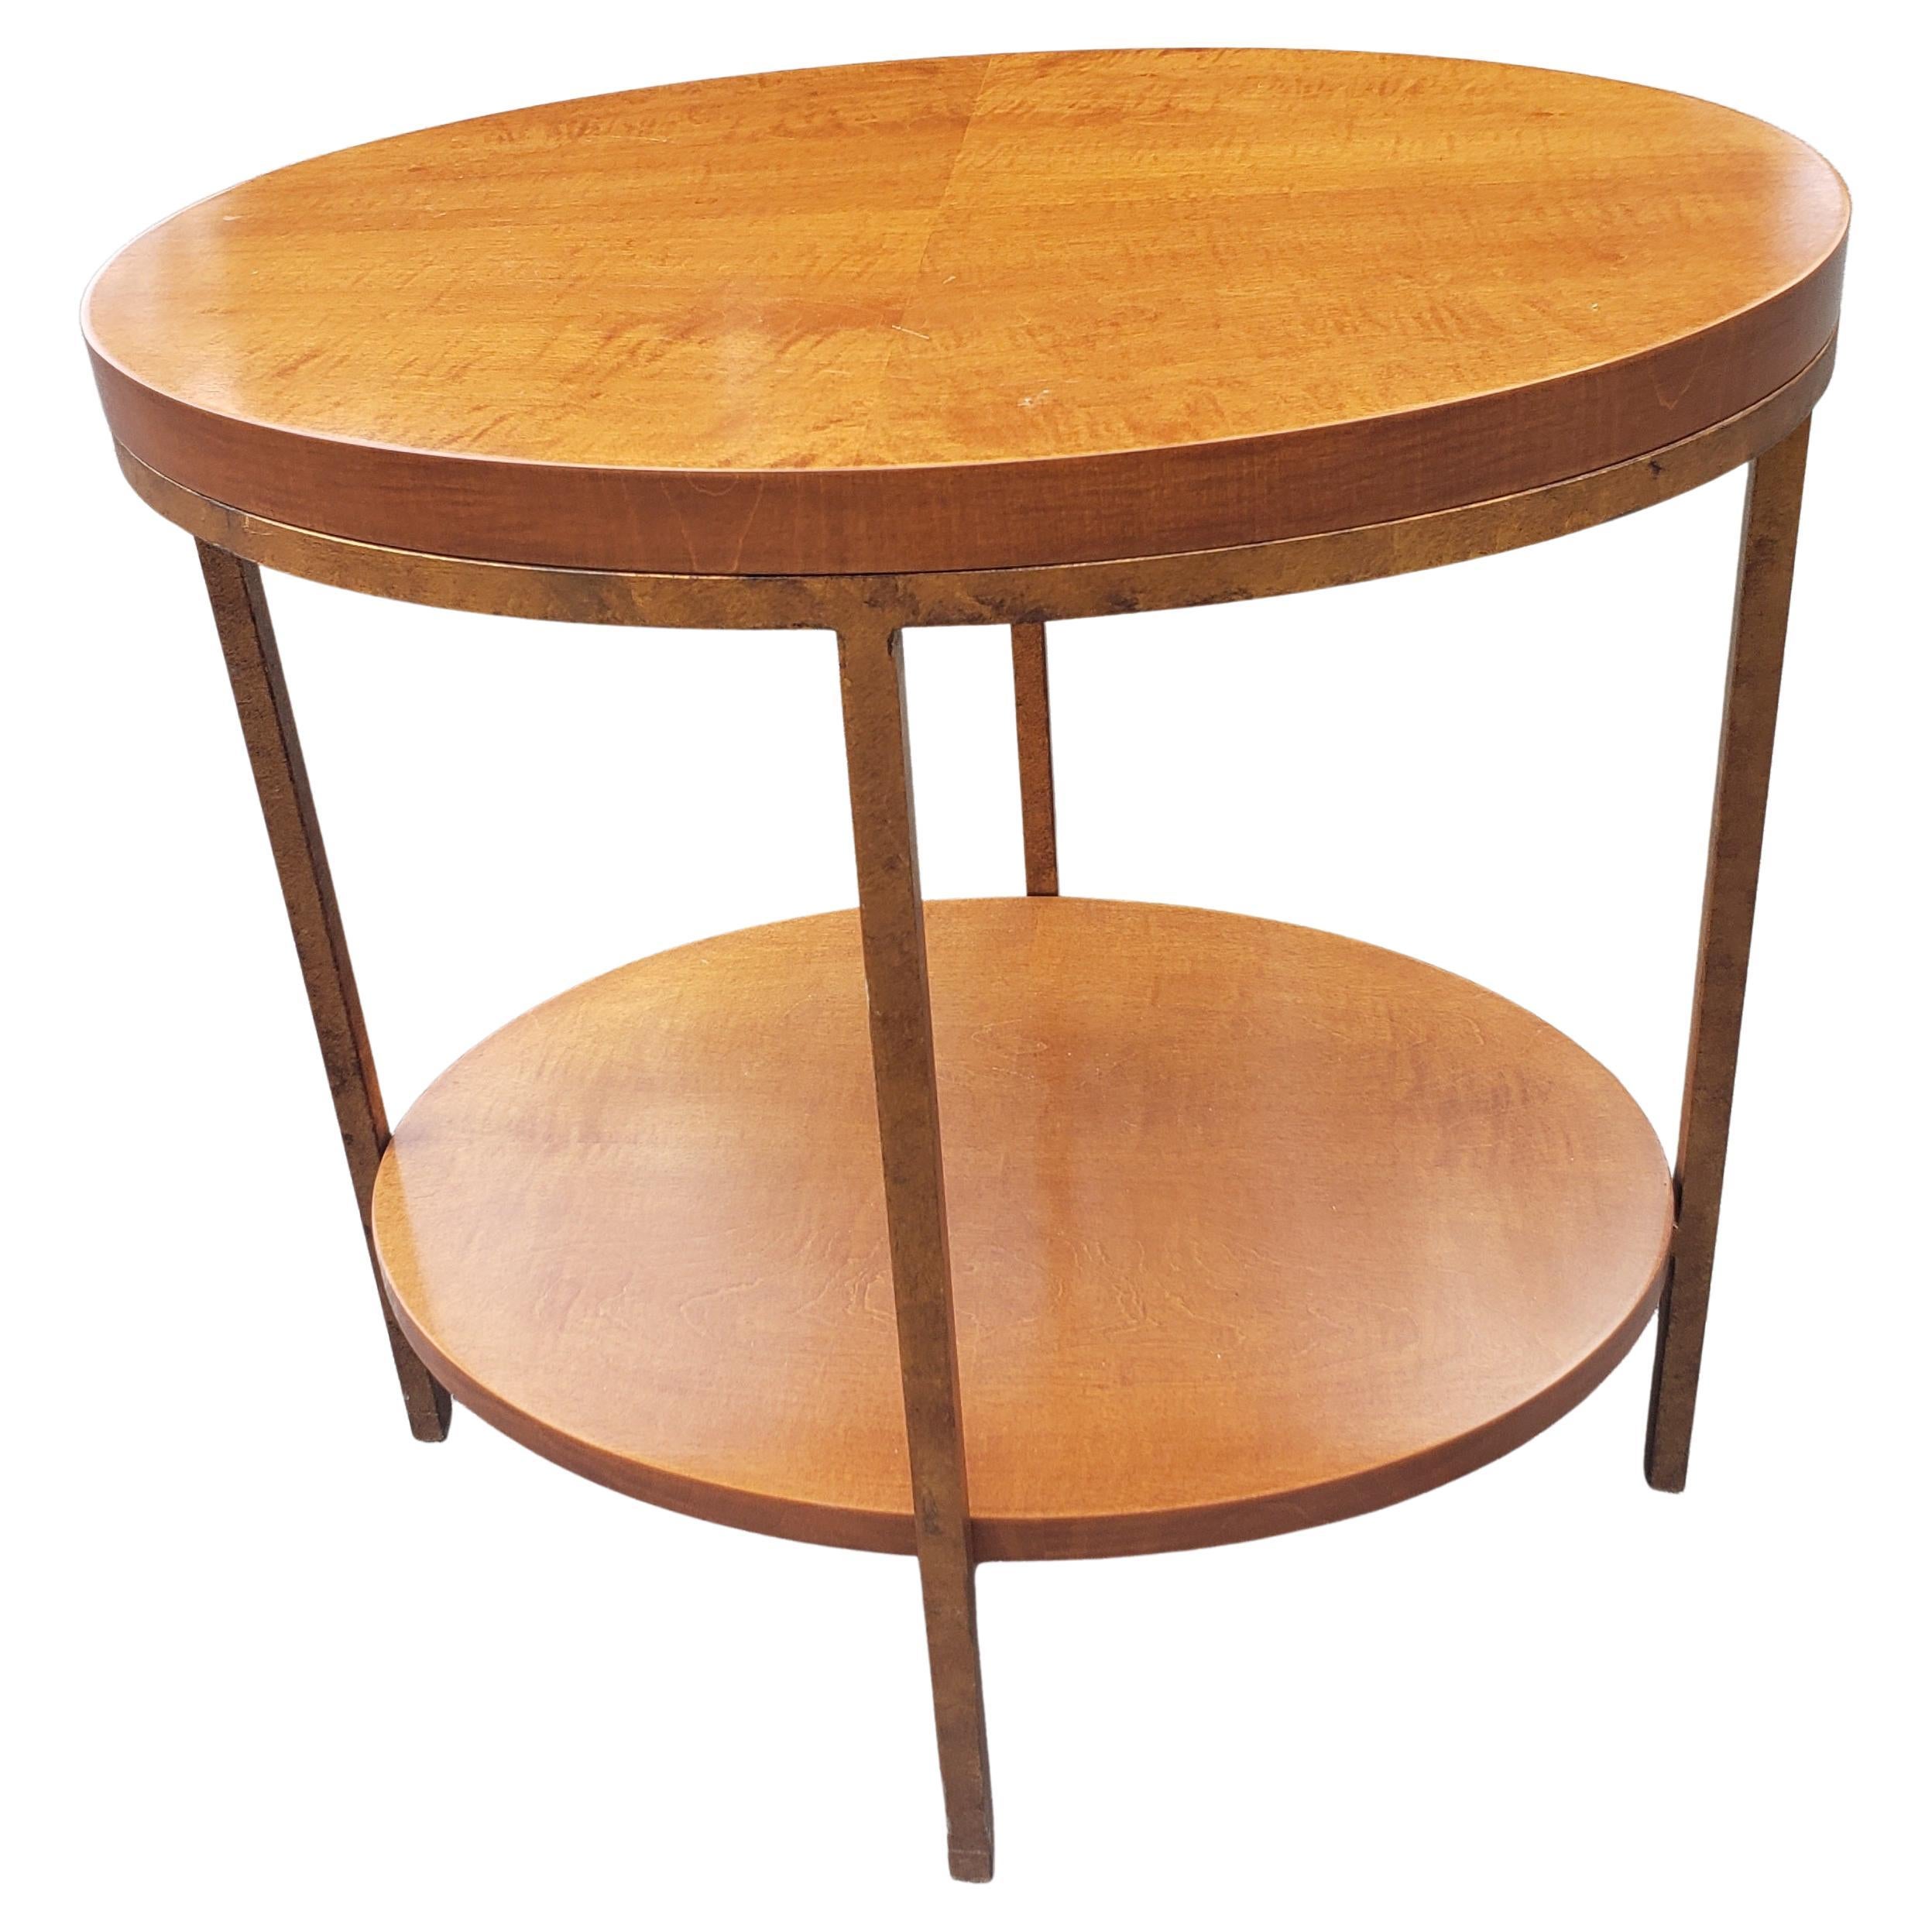 Baker Furniture Zweistufiger ovaler Primavera-Beistelltisch aus Mahagoni und vergoldetem Metall